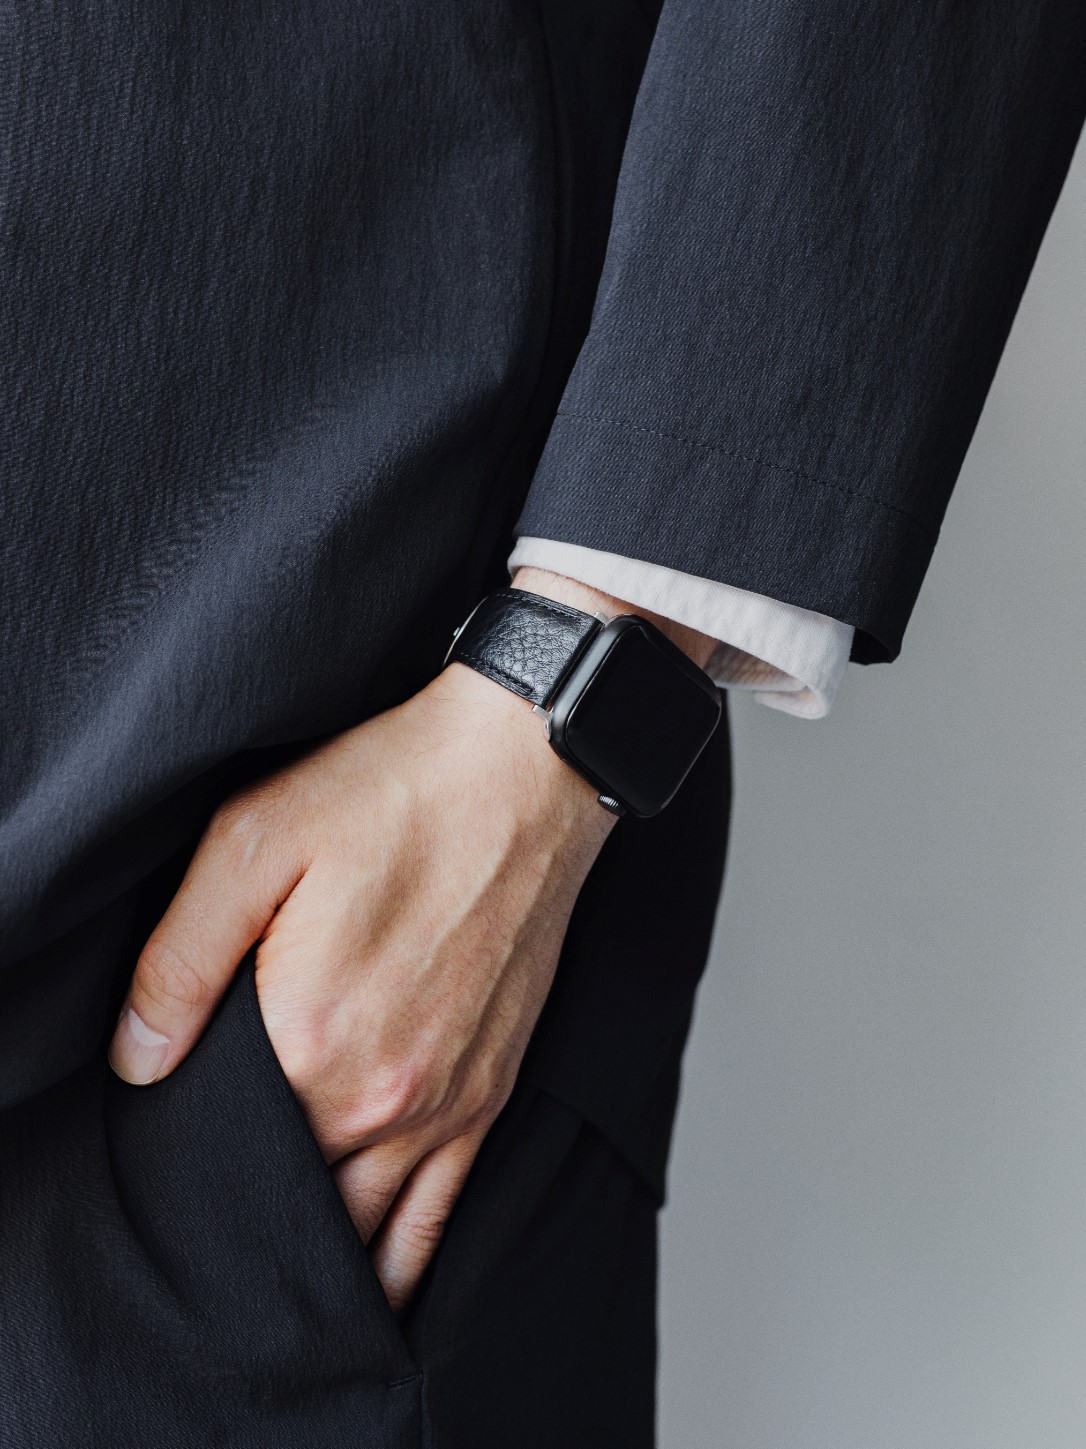 土屋鞄がApple Watchレザーバンドの新作を発売 - Smart Watch Life 